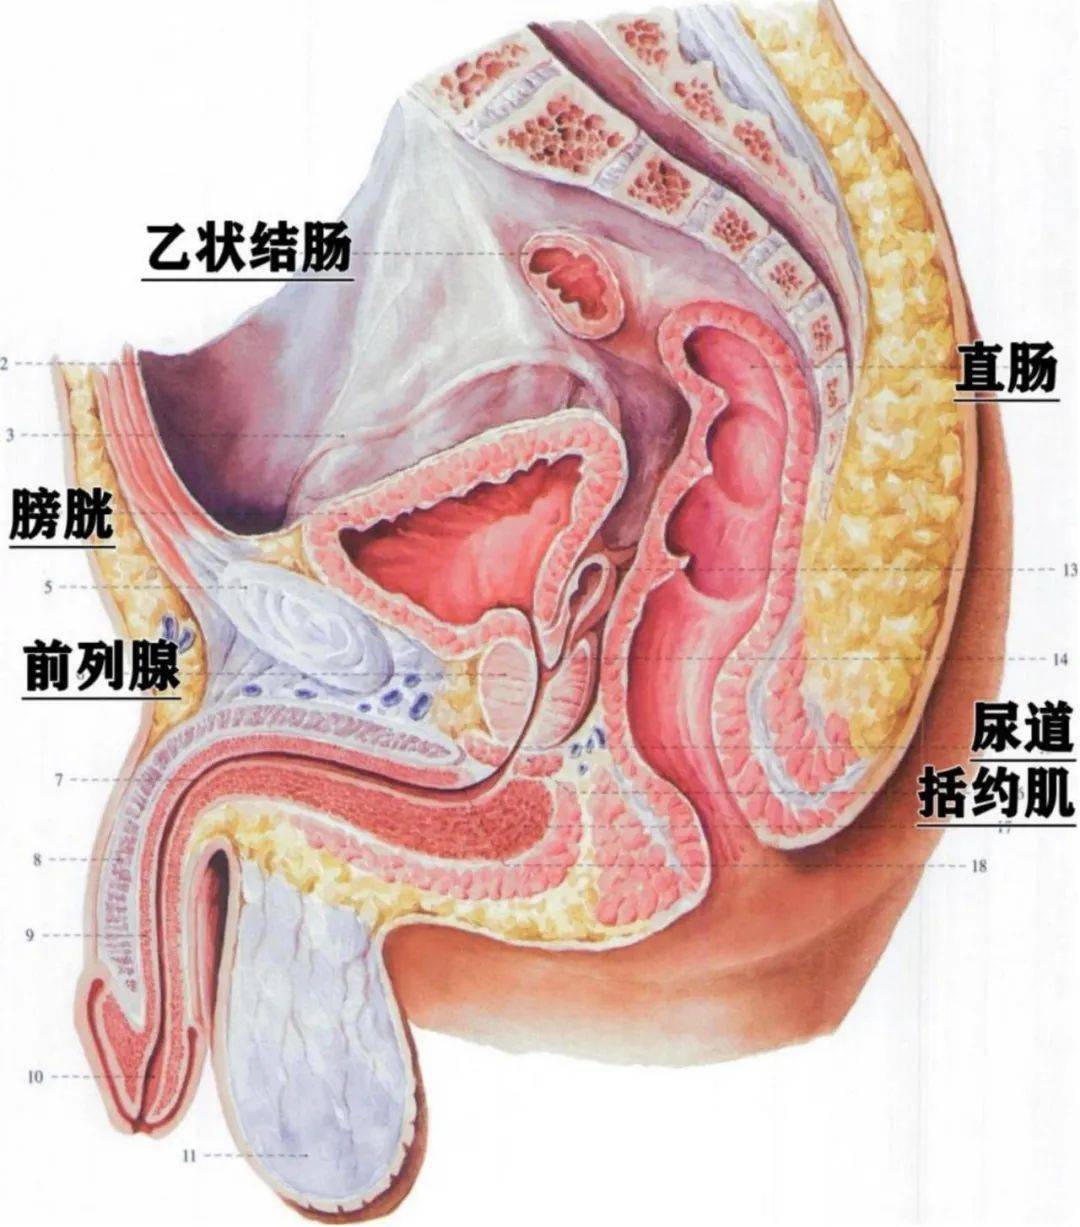 的空腔,男性的盆腔主要包含膀胱,前列腺,乙状结肠,直肠和性腺附属器官